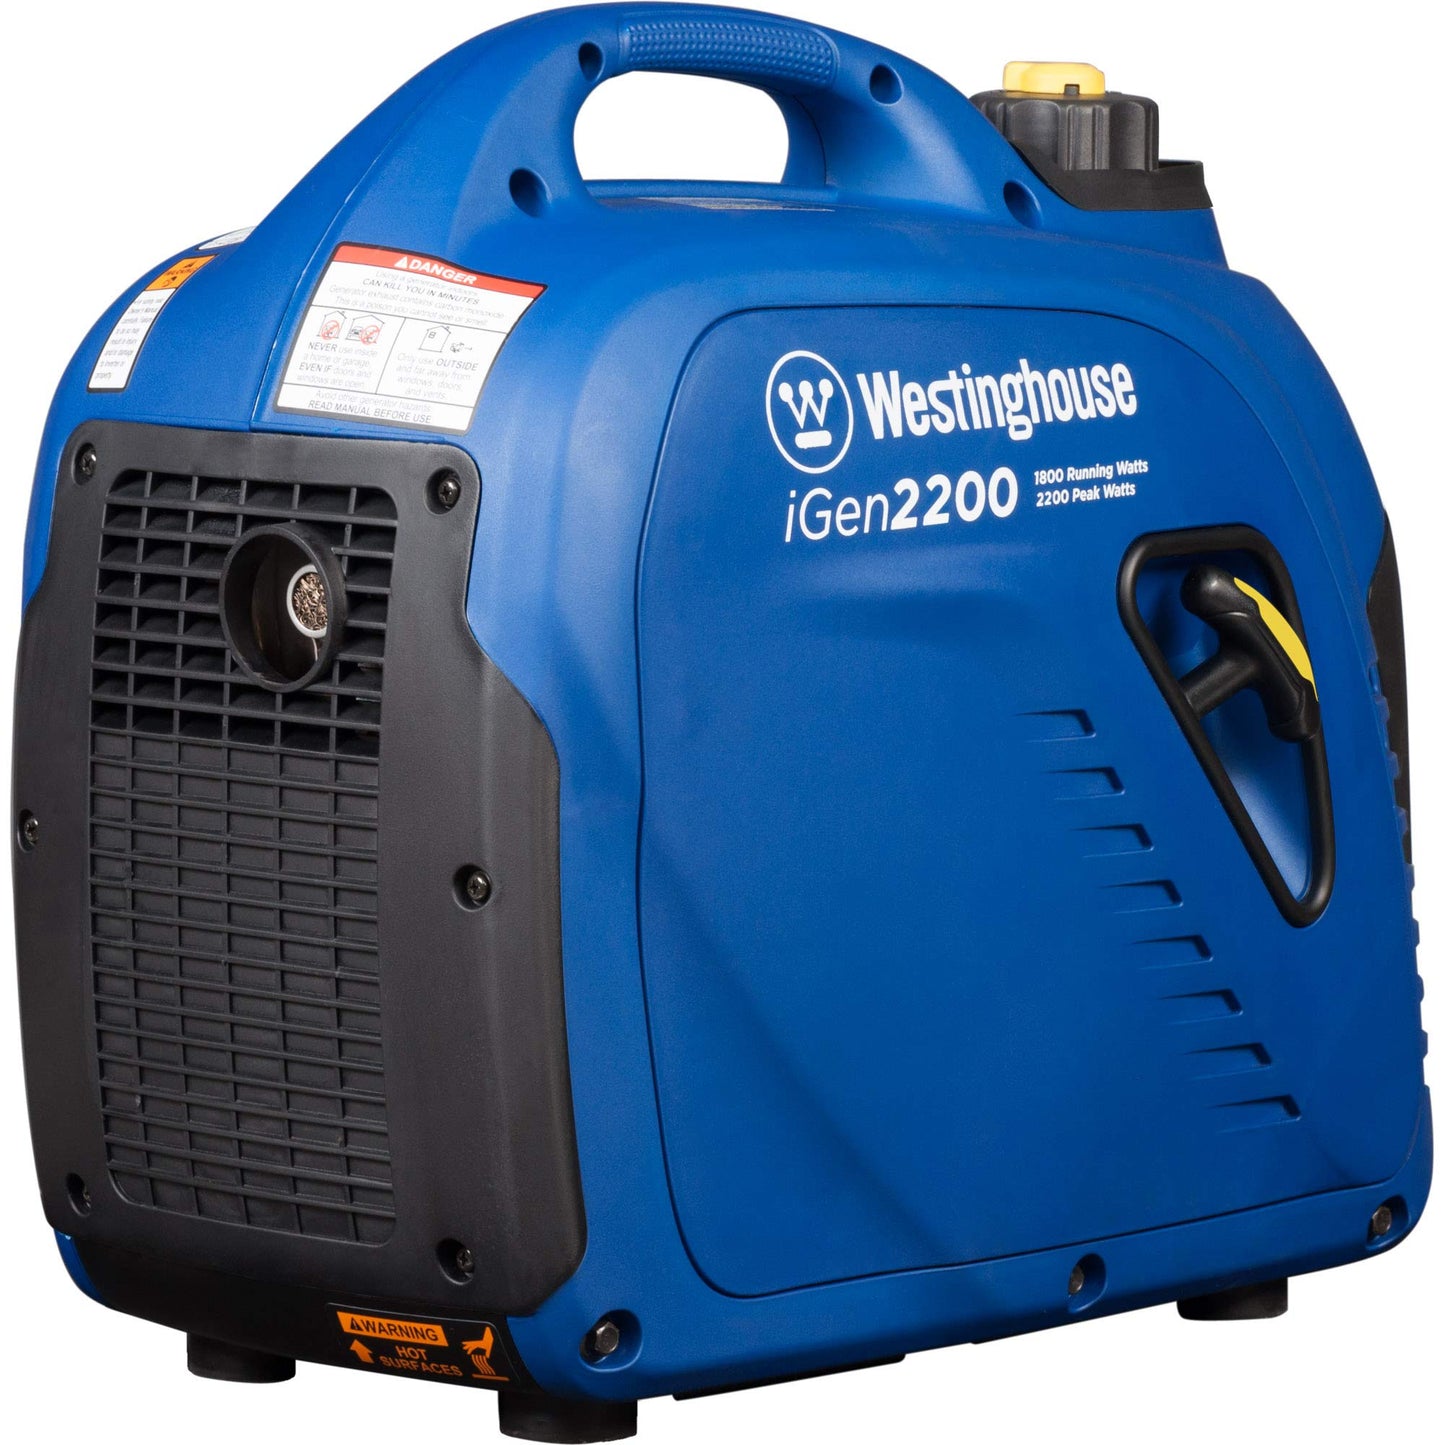 Westinghouse Outdoor Power Equipment 2200 Peak Watt Super Quiet & Lightweight Portable Inverter Generator - iGen2200